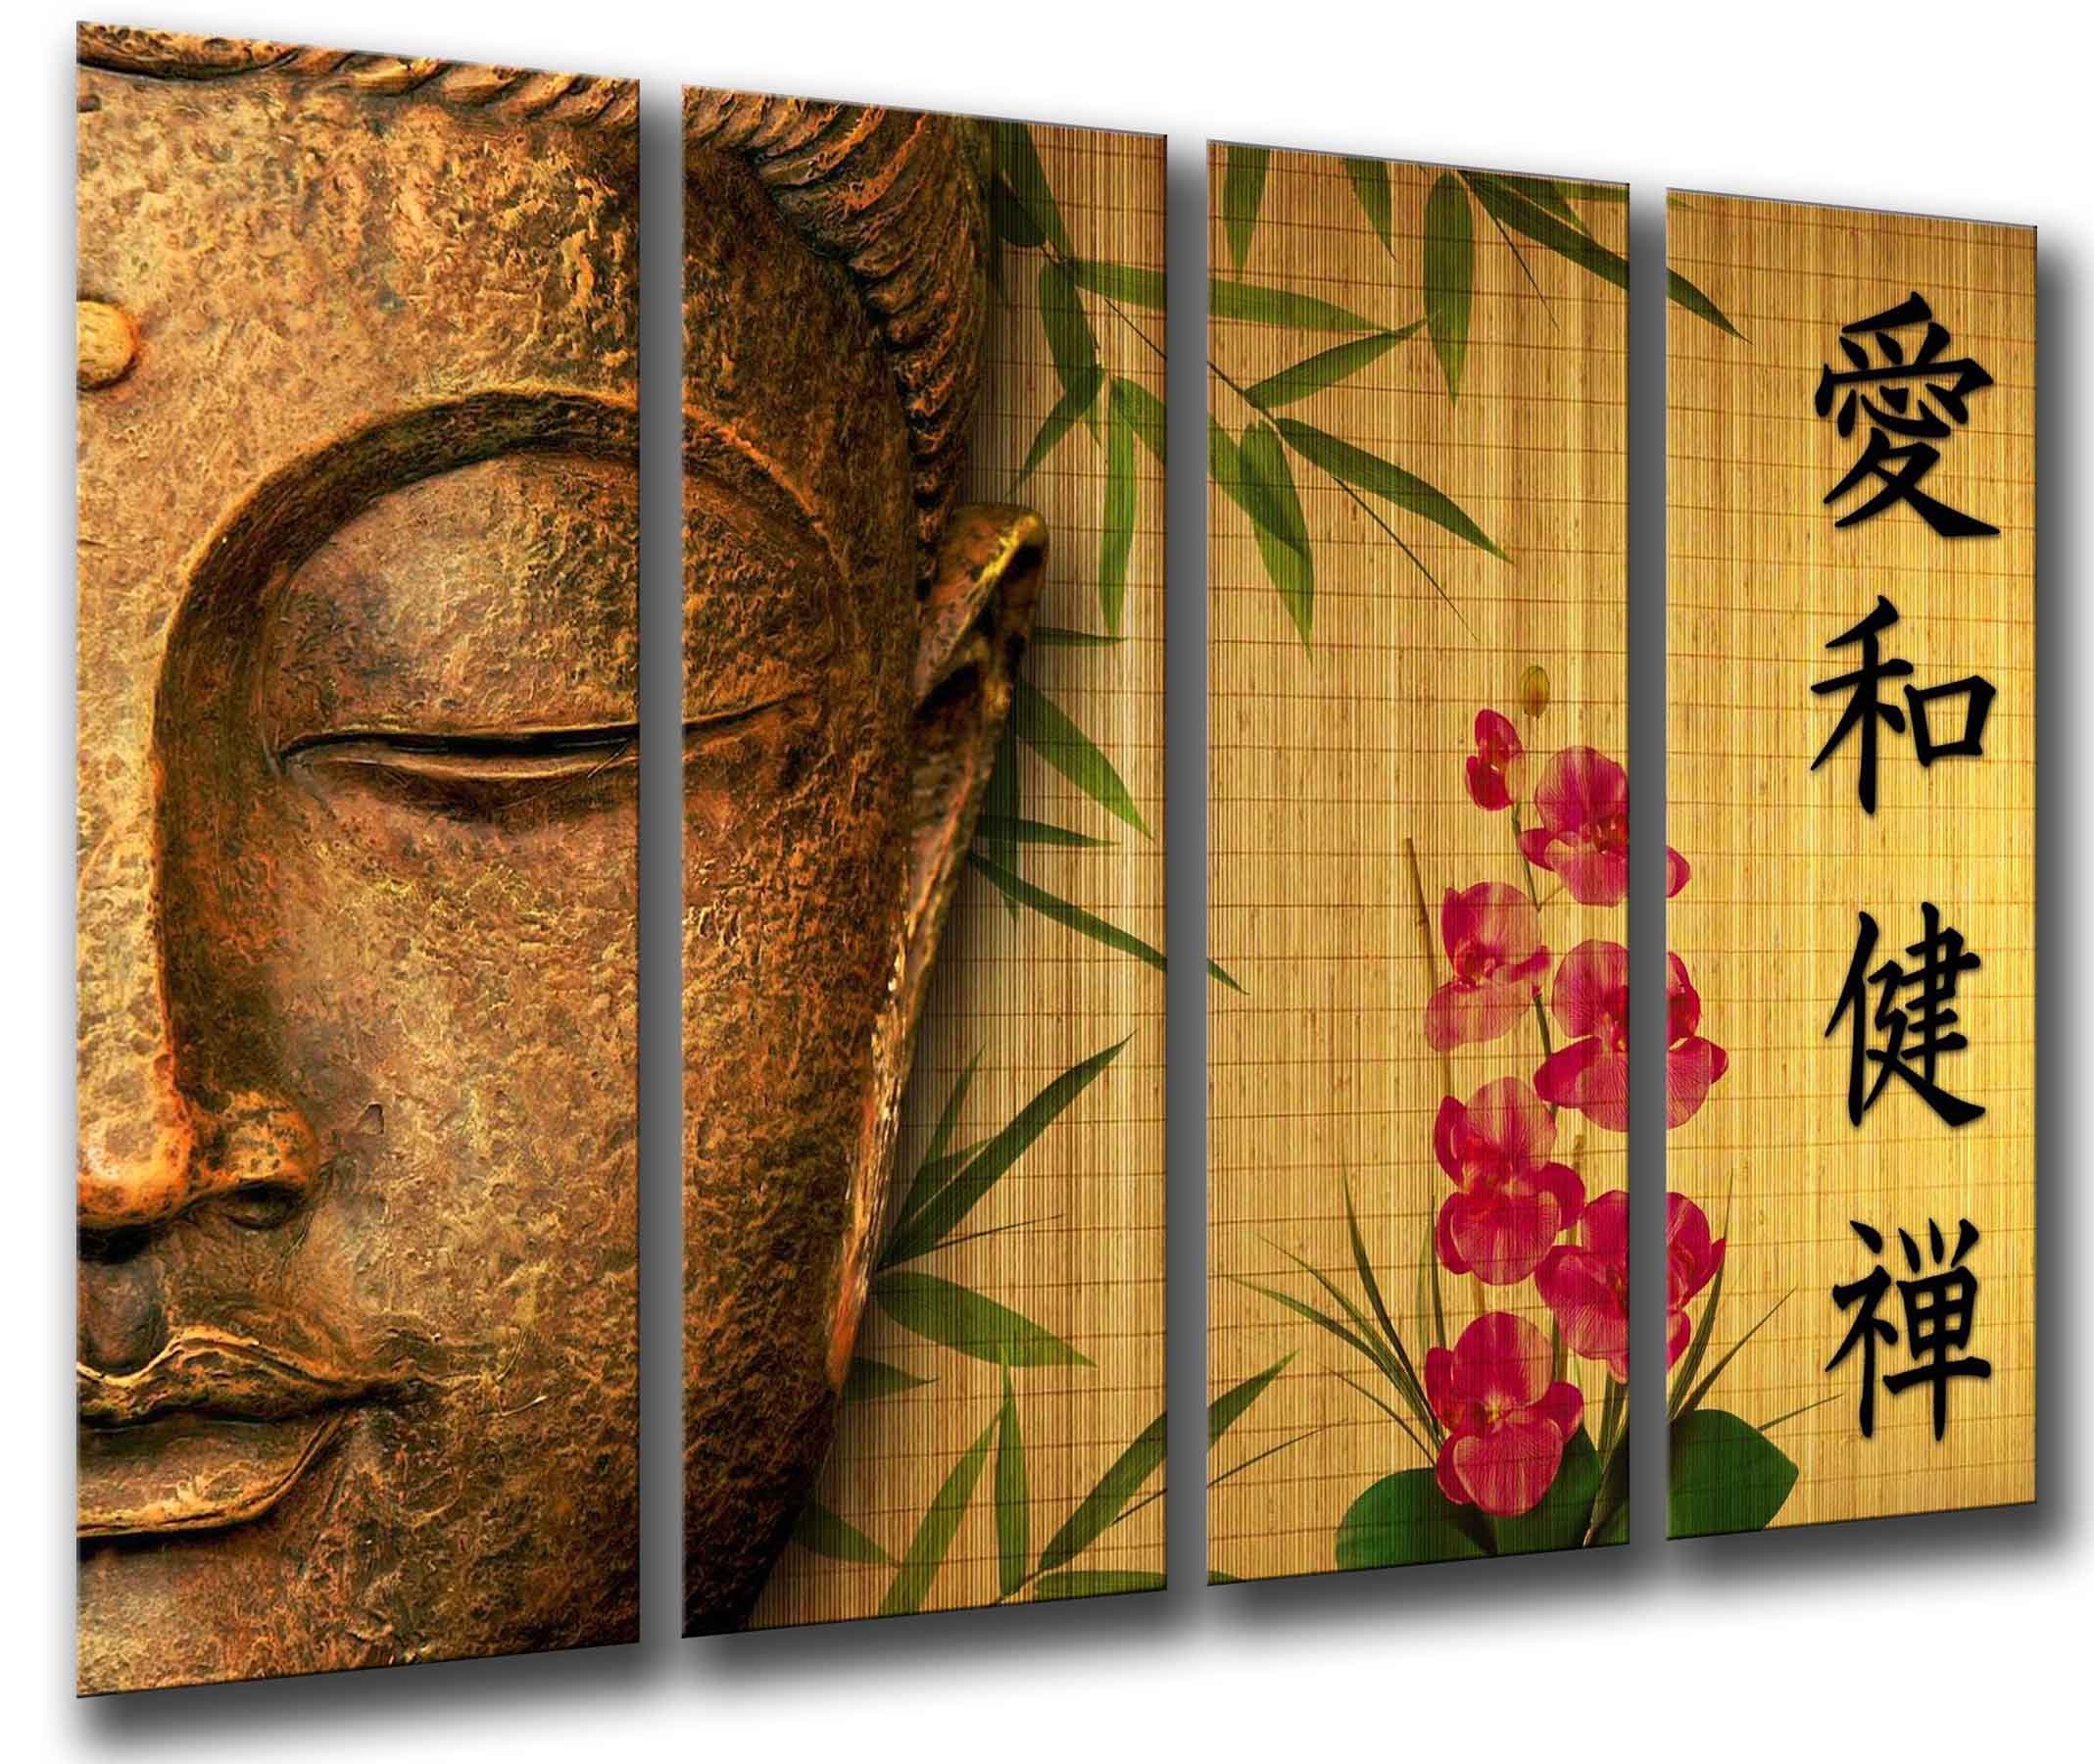 Buda, Buddha, Relajacion, Zen, Meditacion, Relax, impresión fotográfica  sobre madera, cuadro moderno decorativo